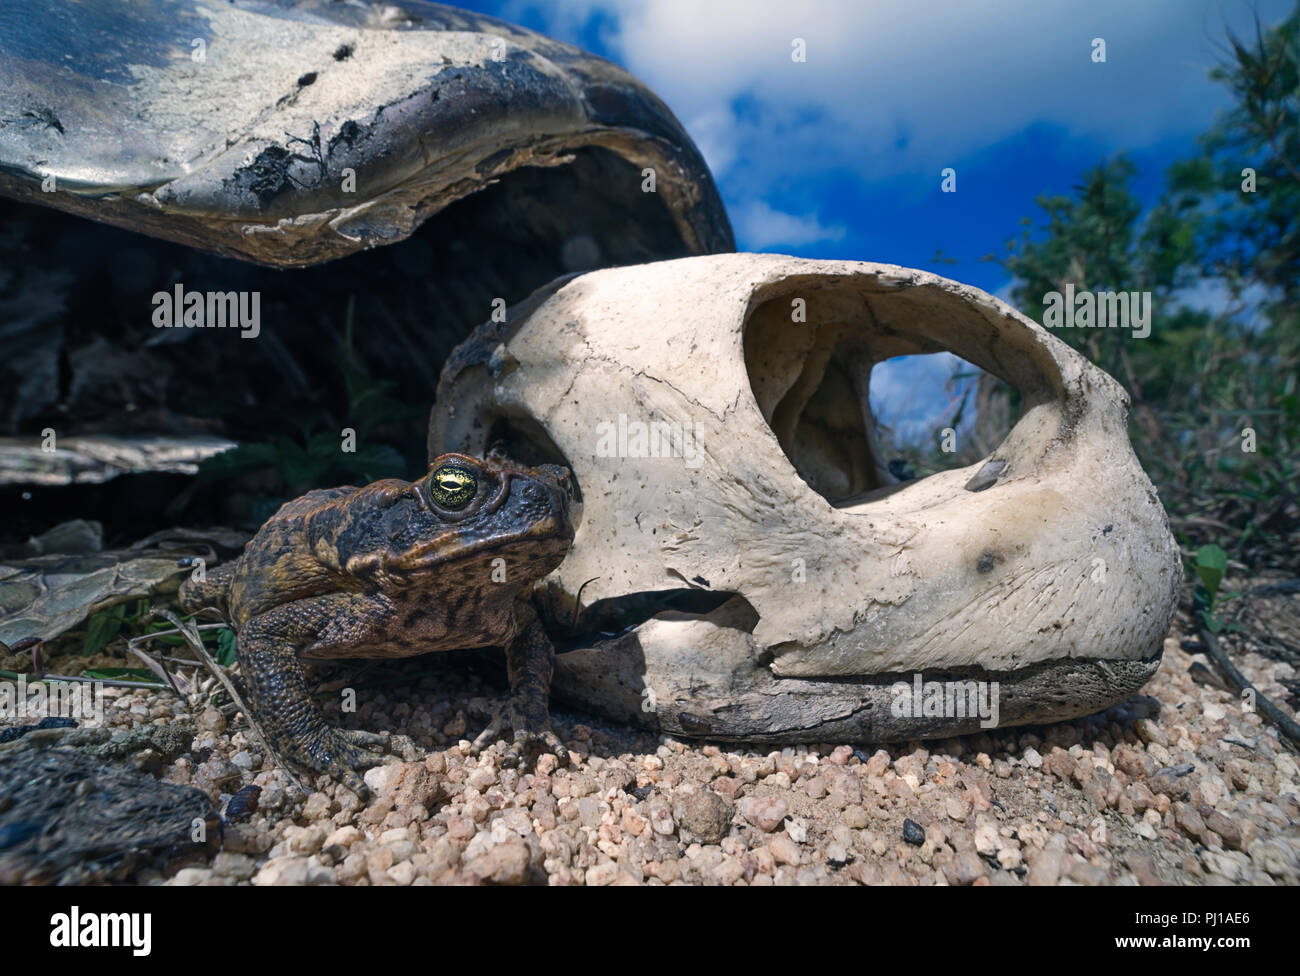 Cane toad (Rhinella marina) à côté du squelette d'une tortue verte (Chelonia mydas), le nord du Queensland, Australie Banque D'Images